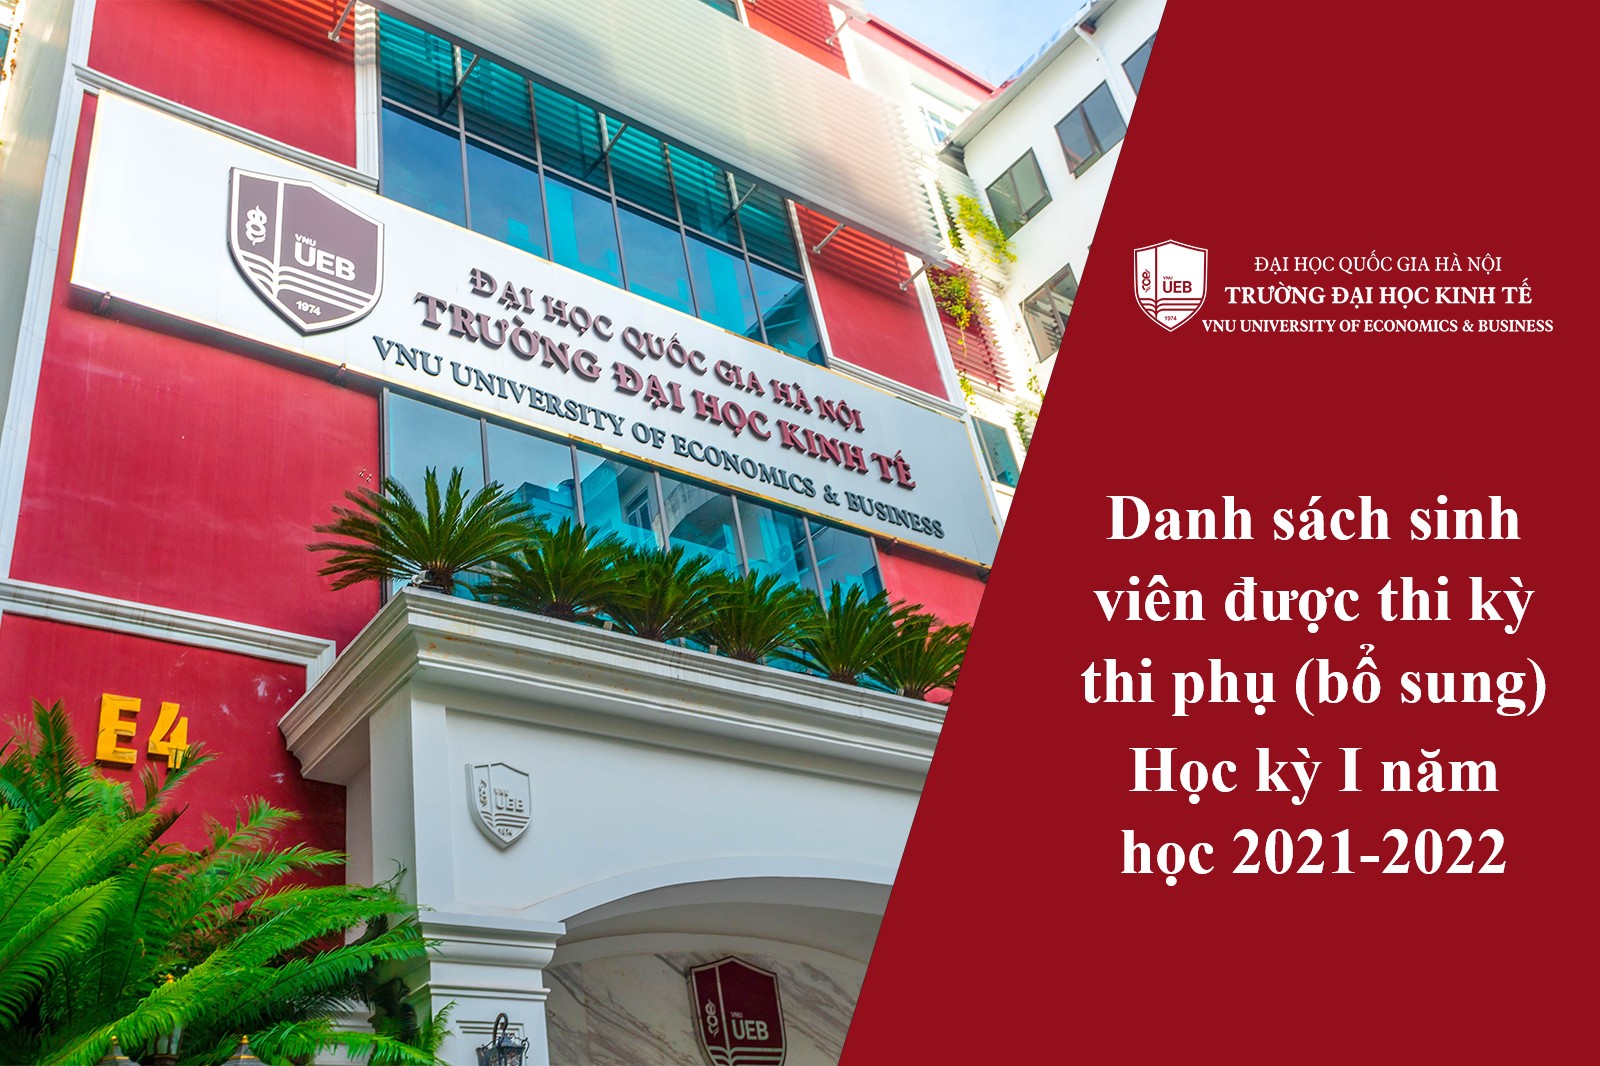 Danh sách sinh viên được thi kỳ thi phụ (bổ sung) học kỳ I năm học 2021-2022 